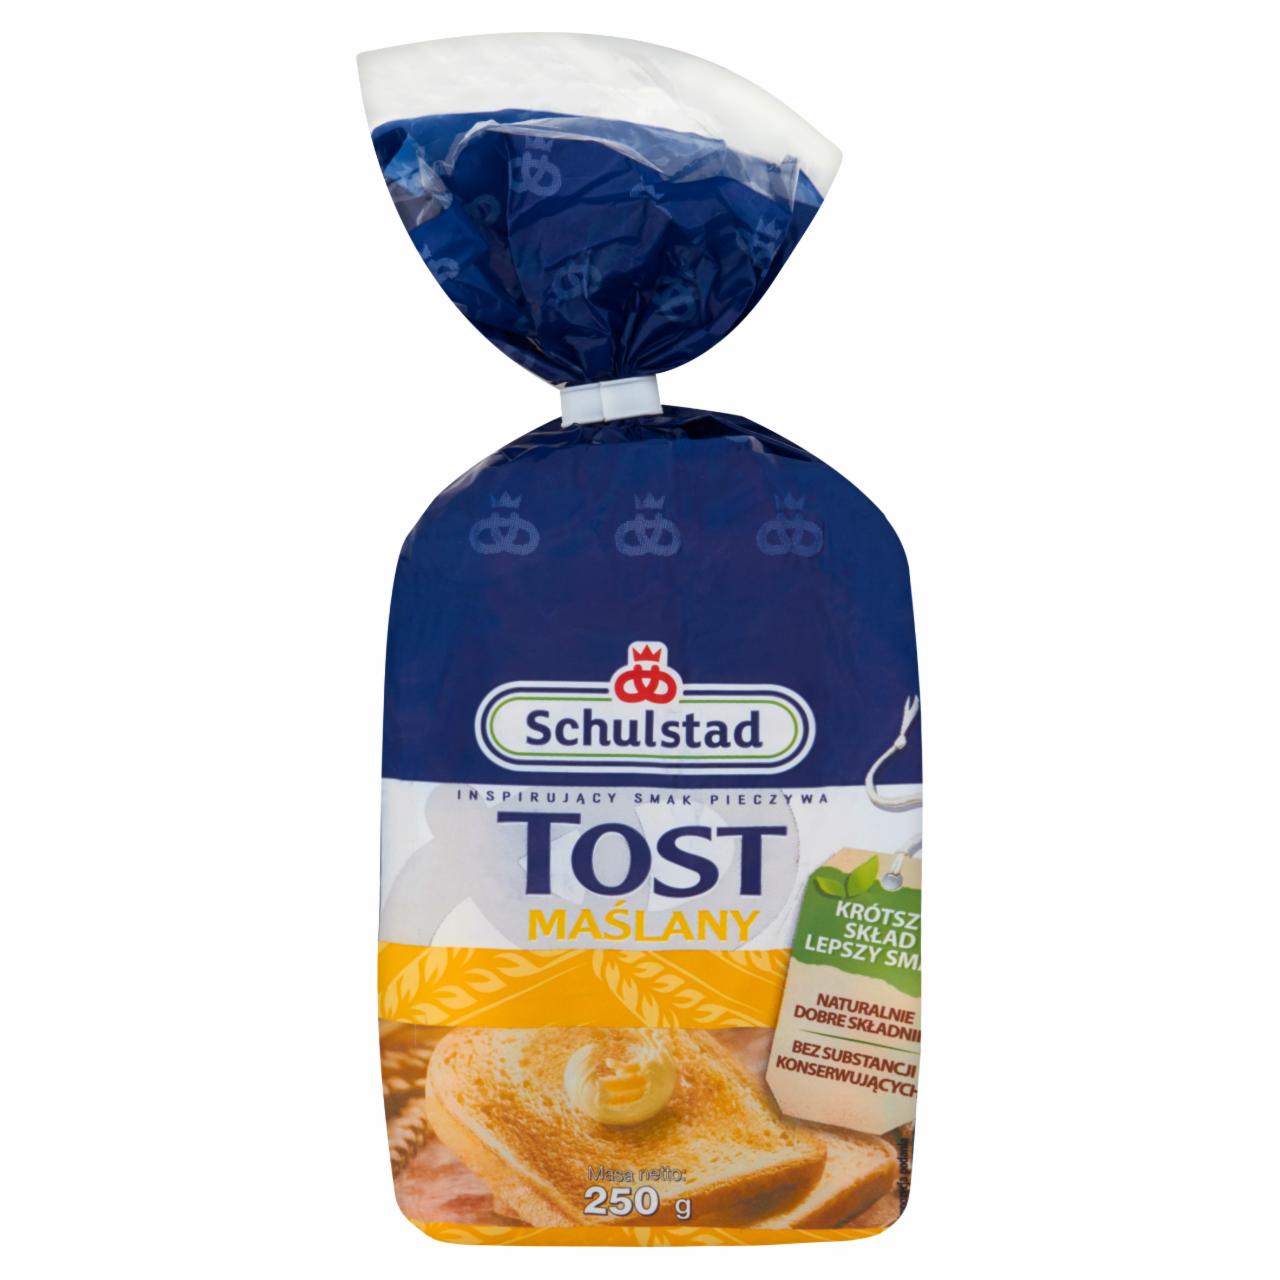 Zdjęcia - Schulstad Tost maślany Chleb tostowy 250 g